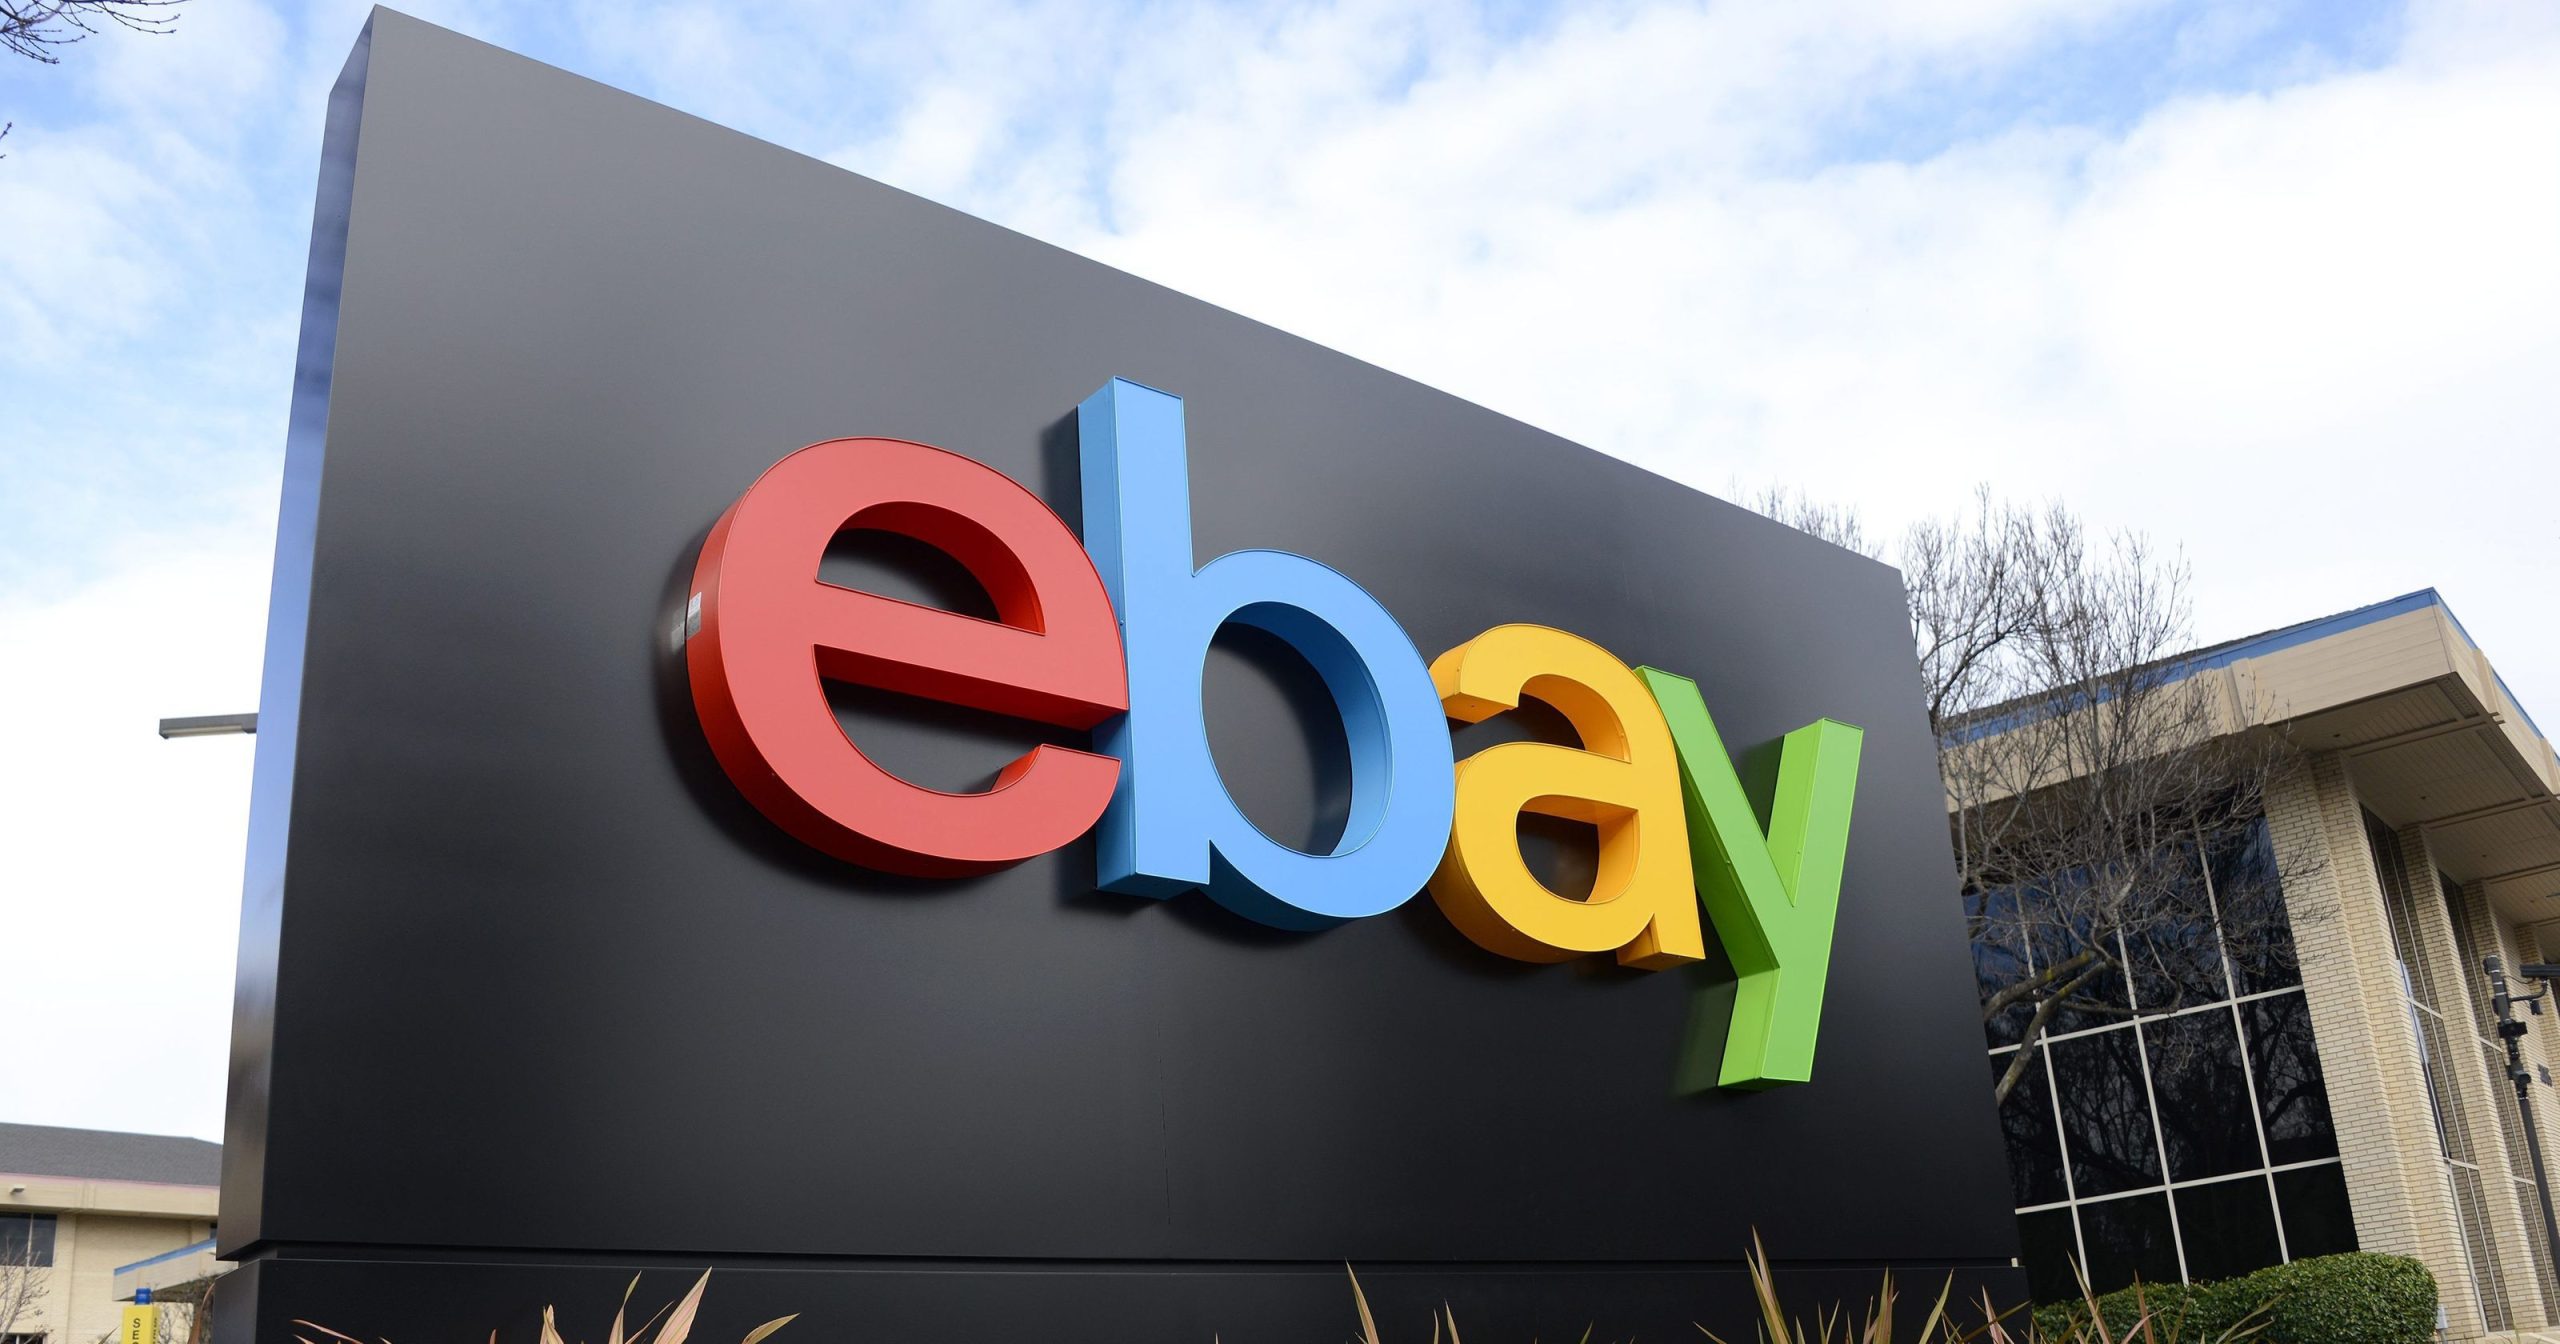 Τι αγοράζουν οι Έλληνες καταναλωτές από το eBay – Τα πιο δημοφιλή προϊόντα